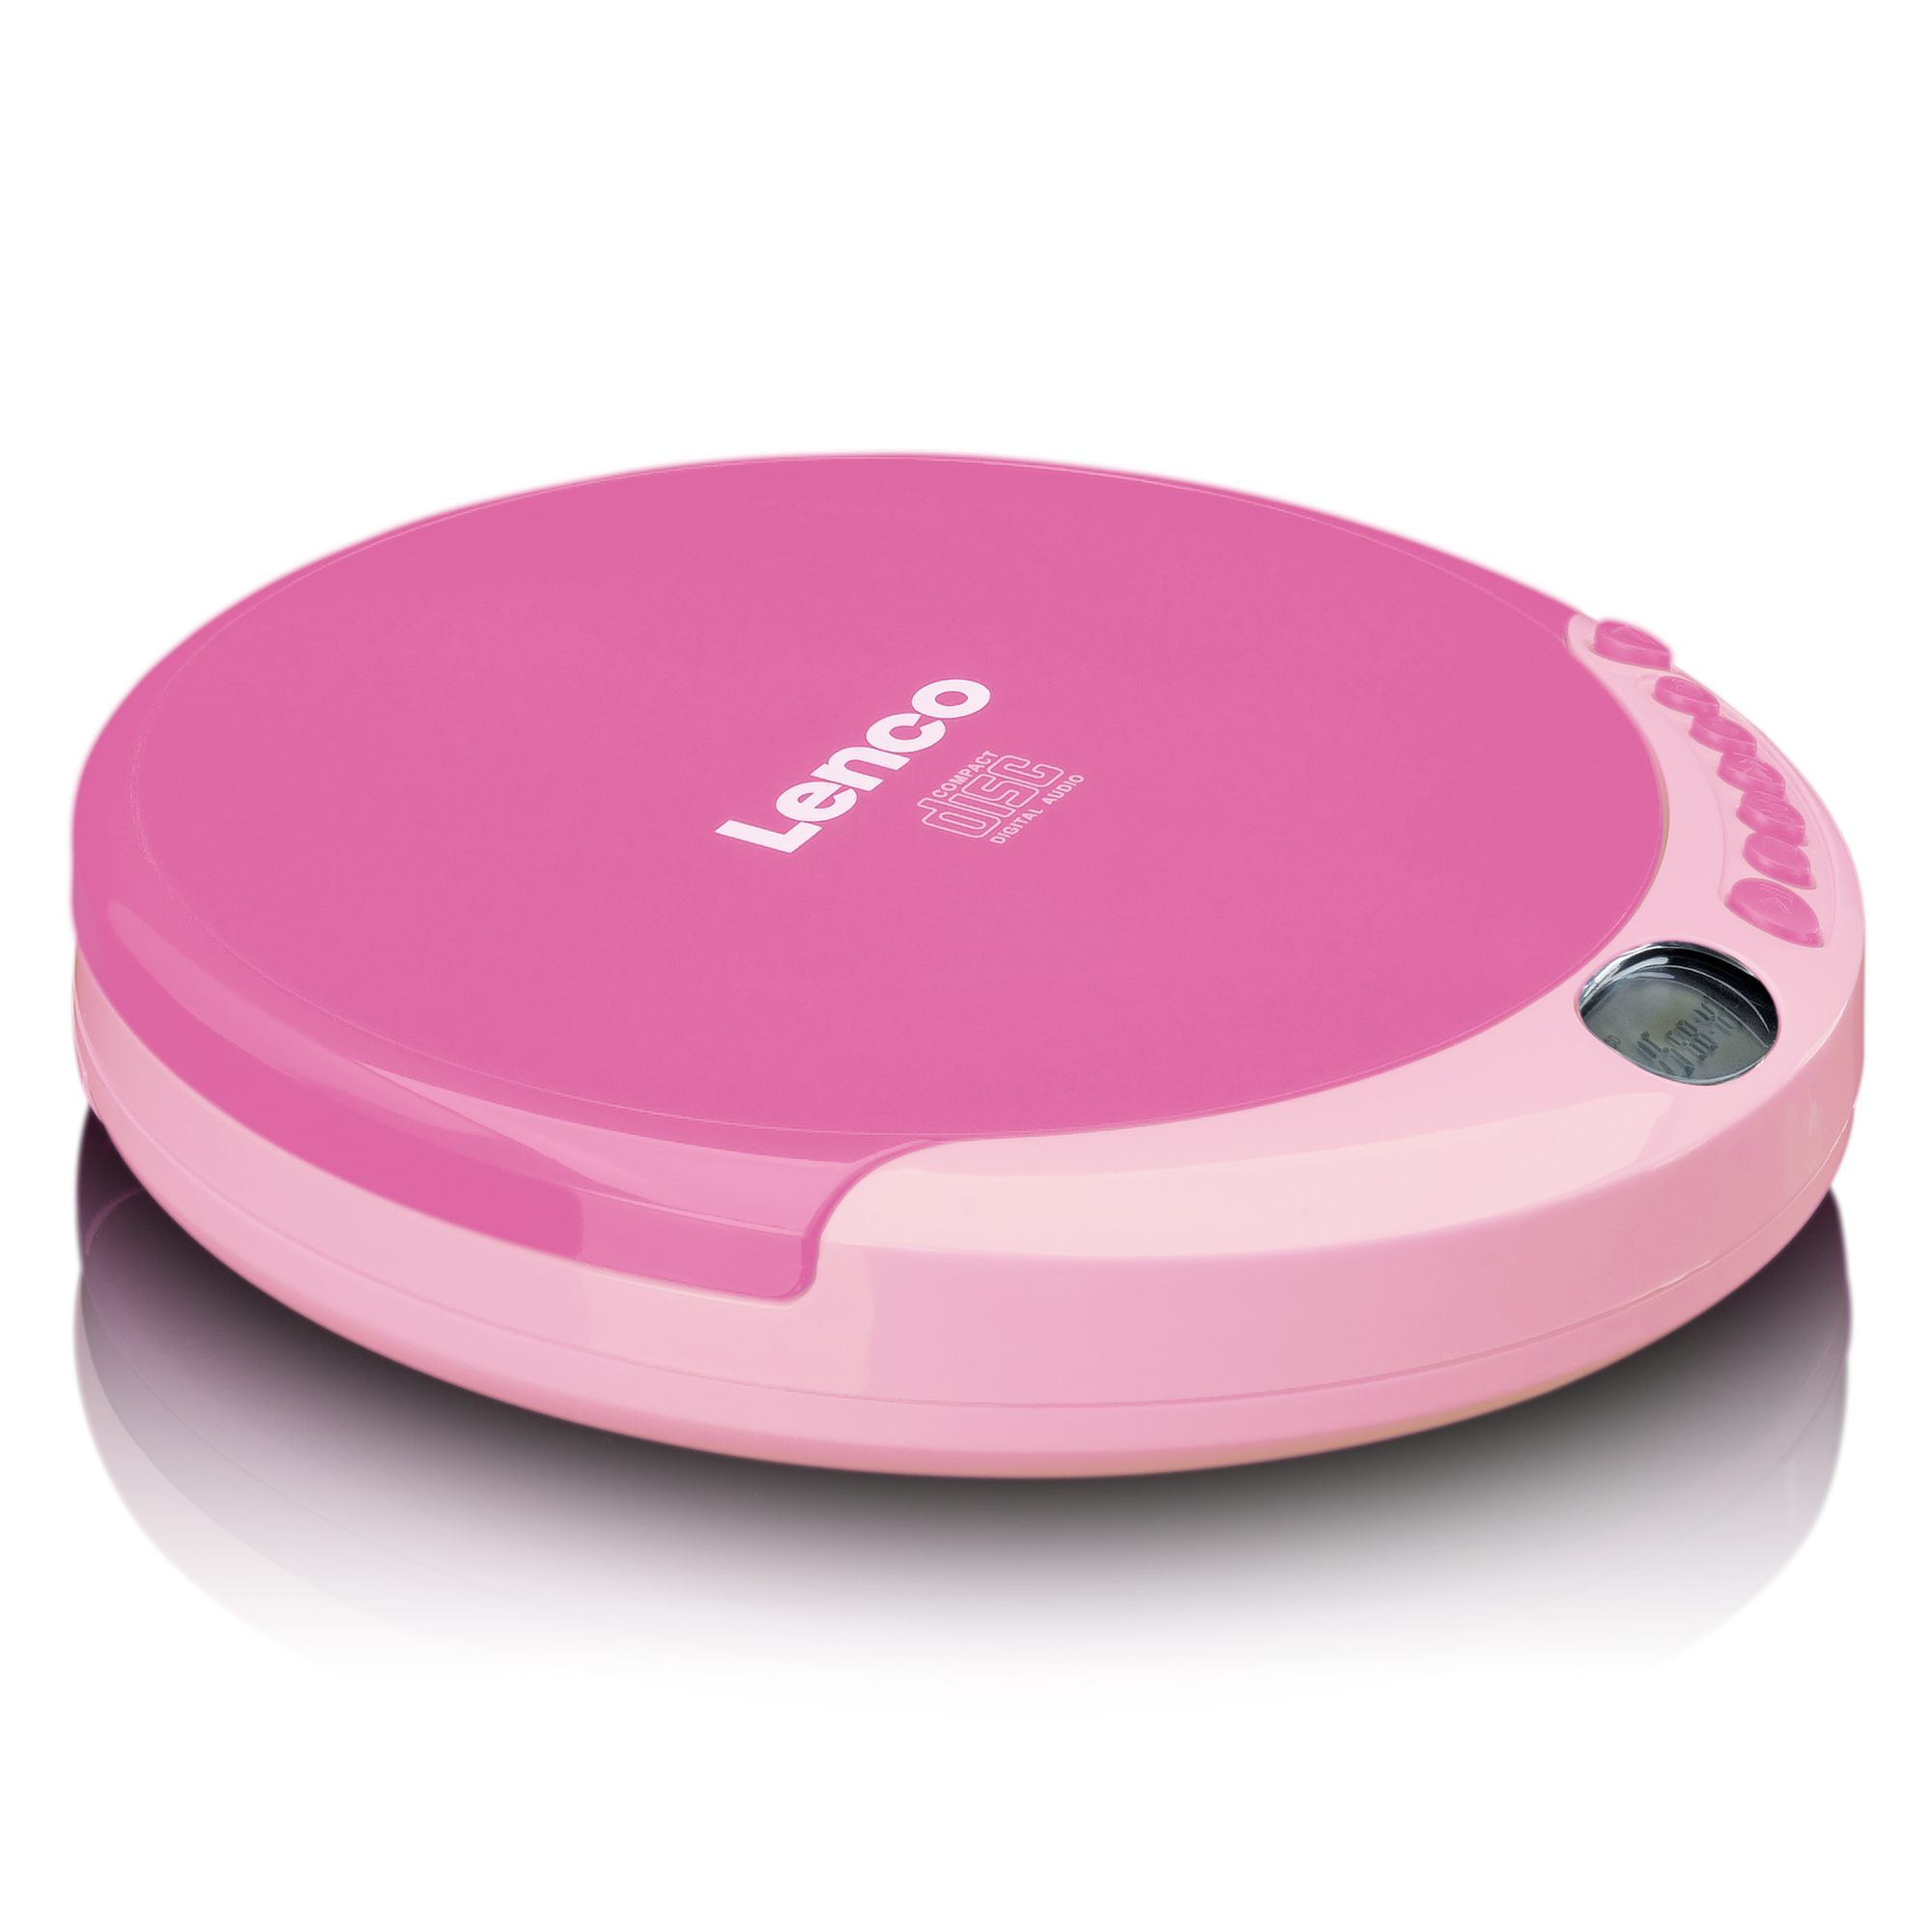 LENCO CD-011PK Pink CD-Spieler